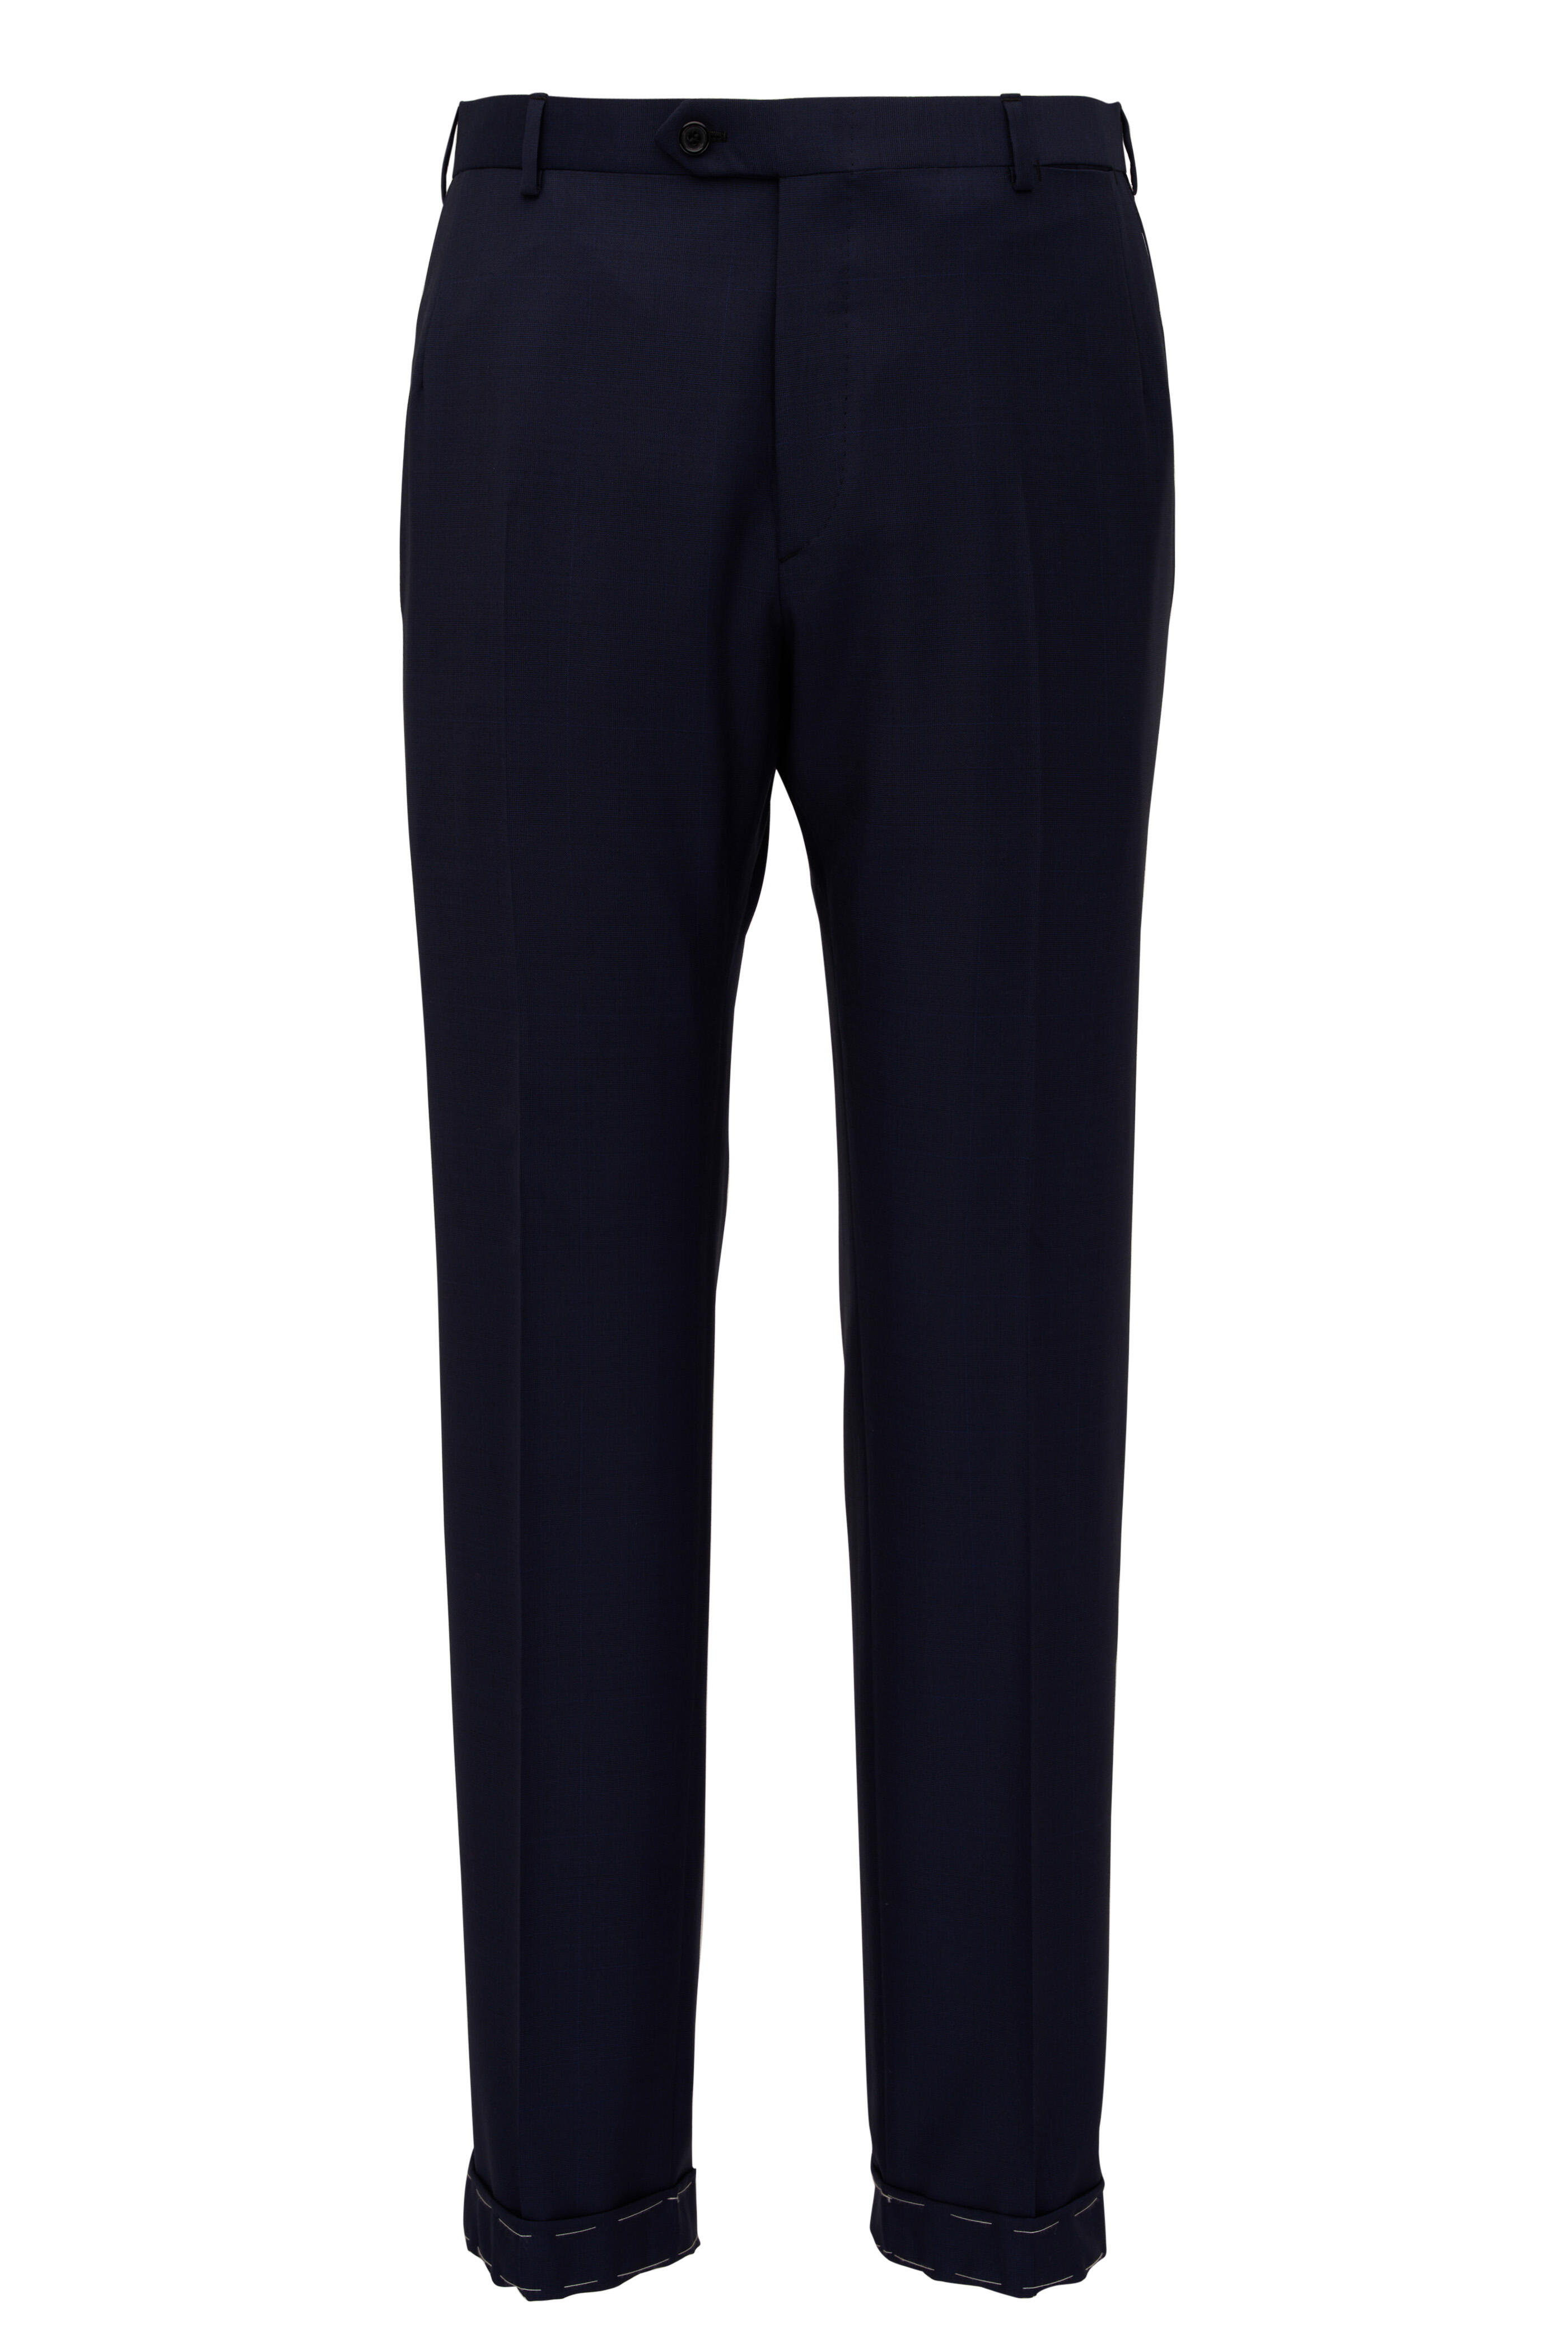 Brioni - Navy Blue Subtle Plaid Wool Suit | Mitchell Stores